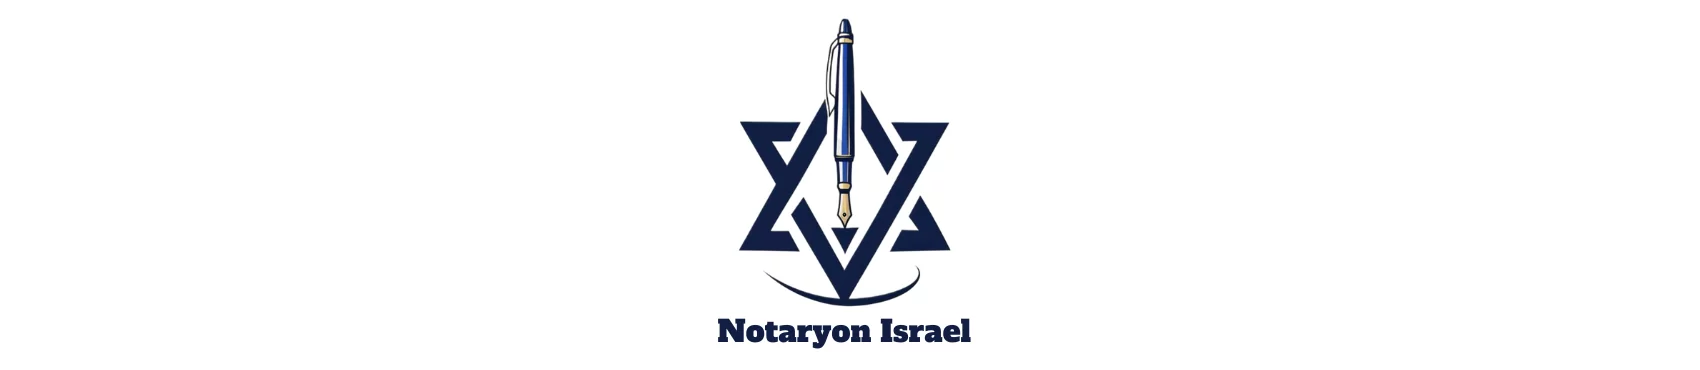 נוטריון ישראל: שירותי תרגום נוטריוני, ייפוי כוח והוצאת דרכונים